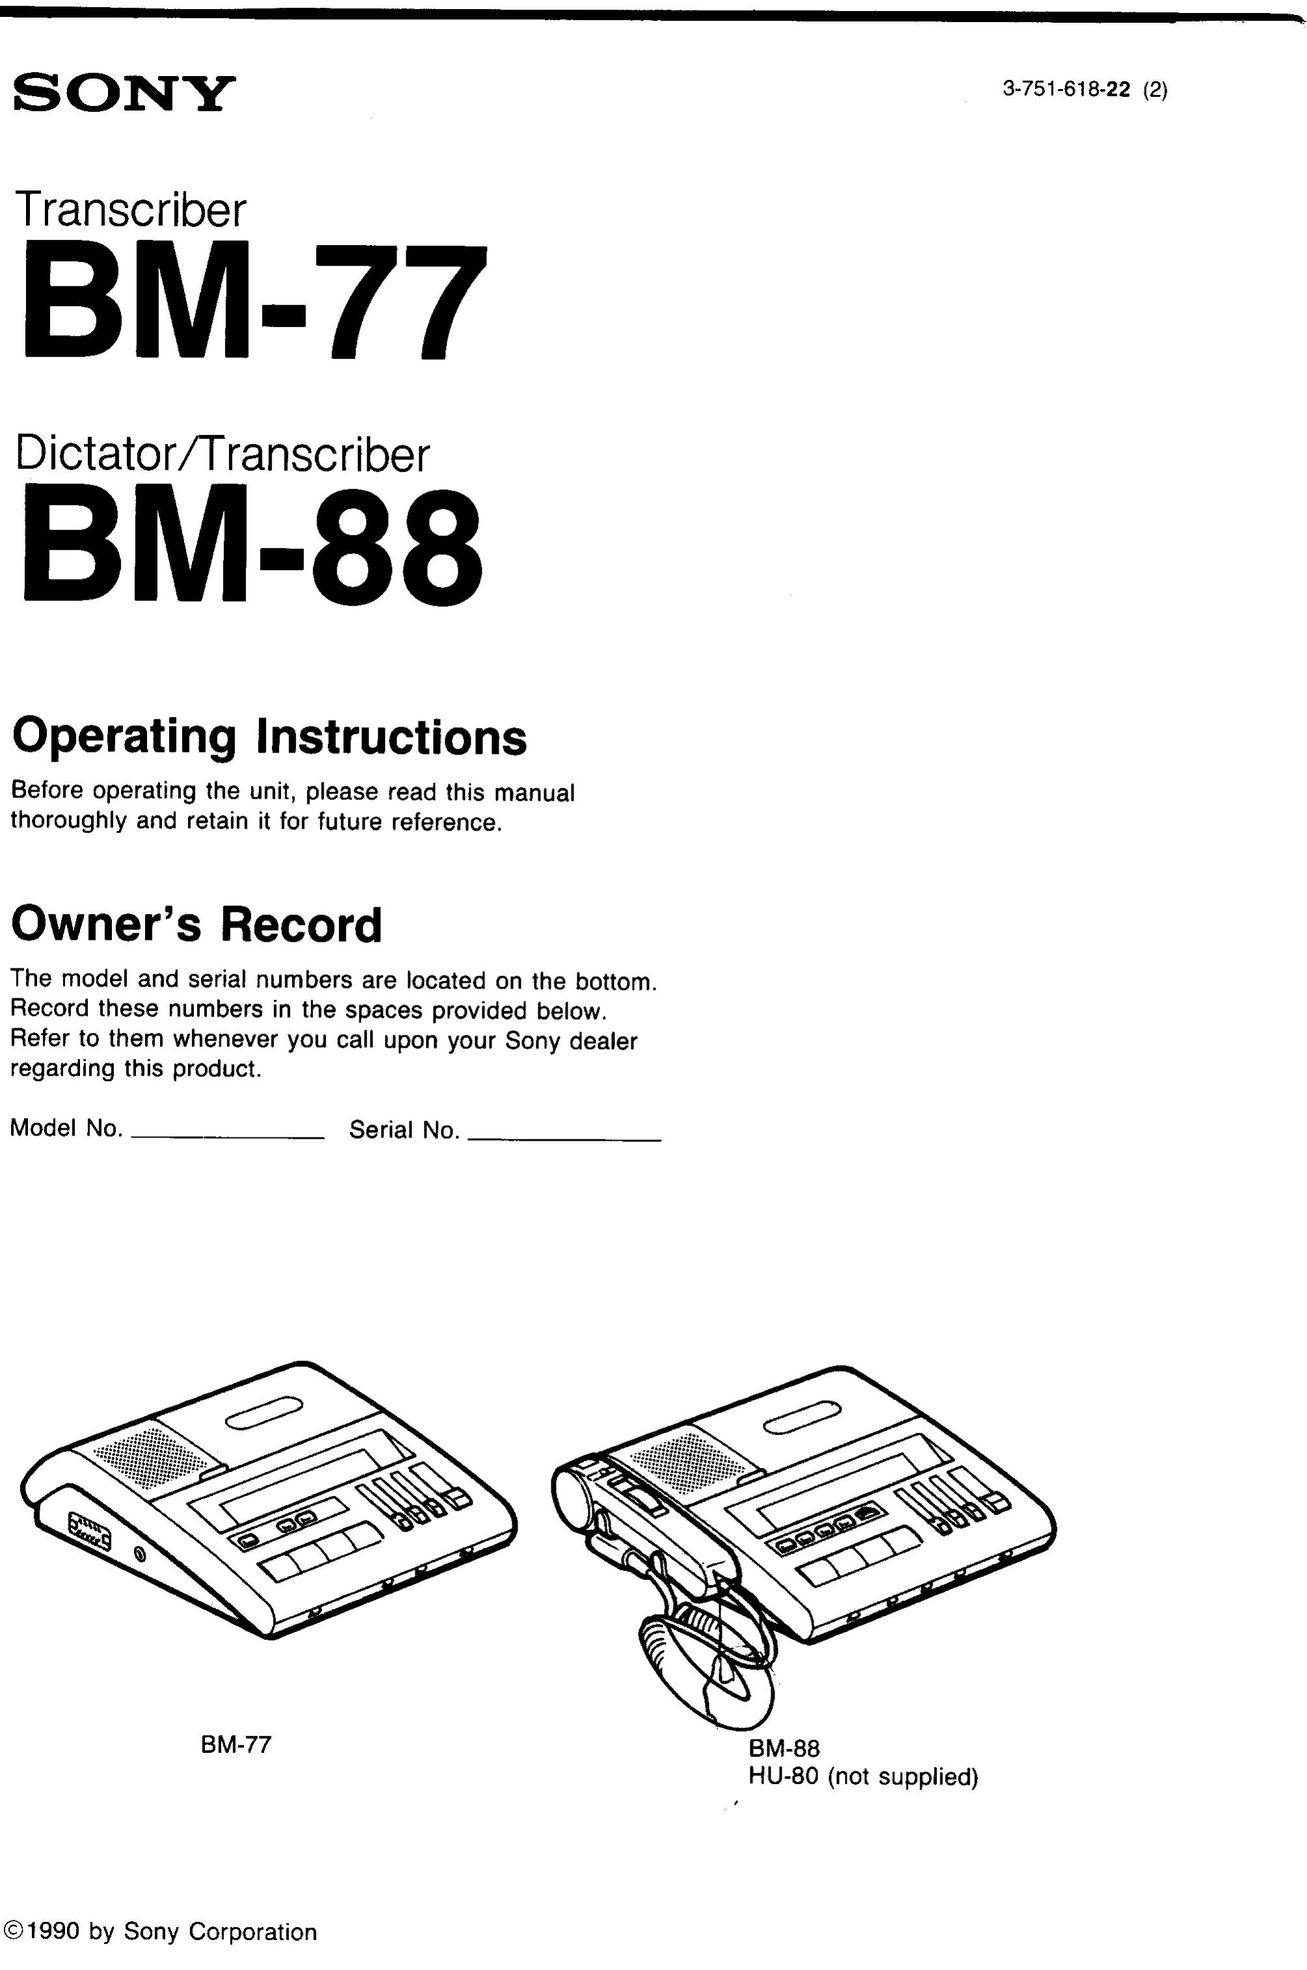 Sony BM-88 Microcassette Recorder User Manual